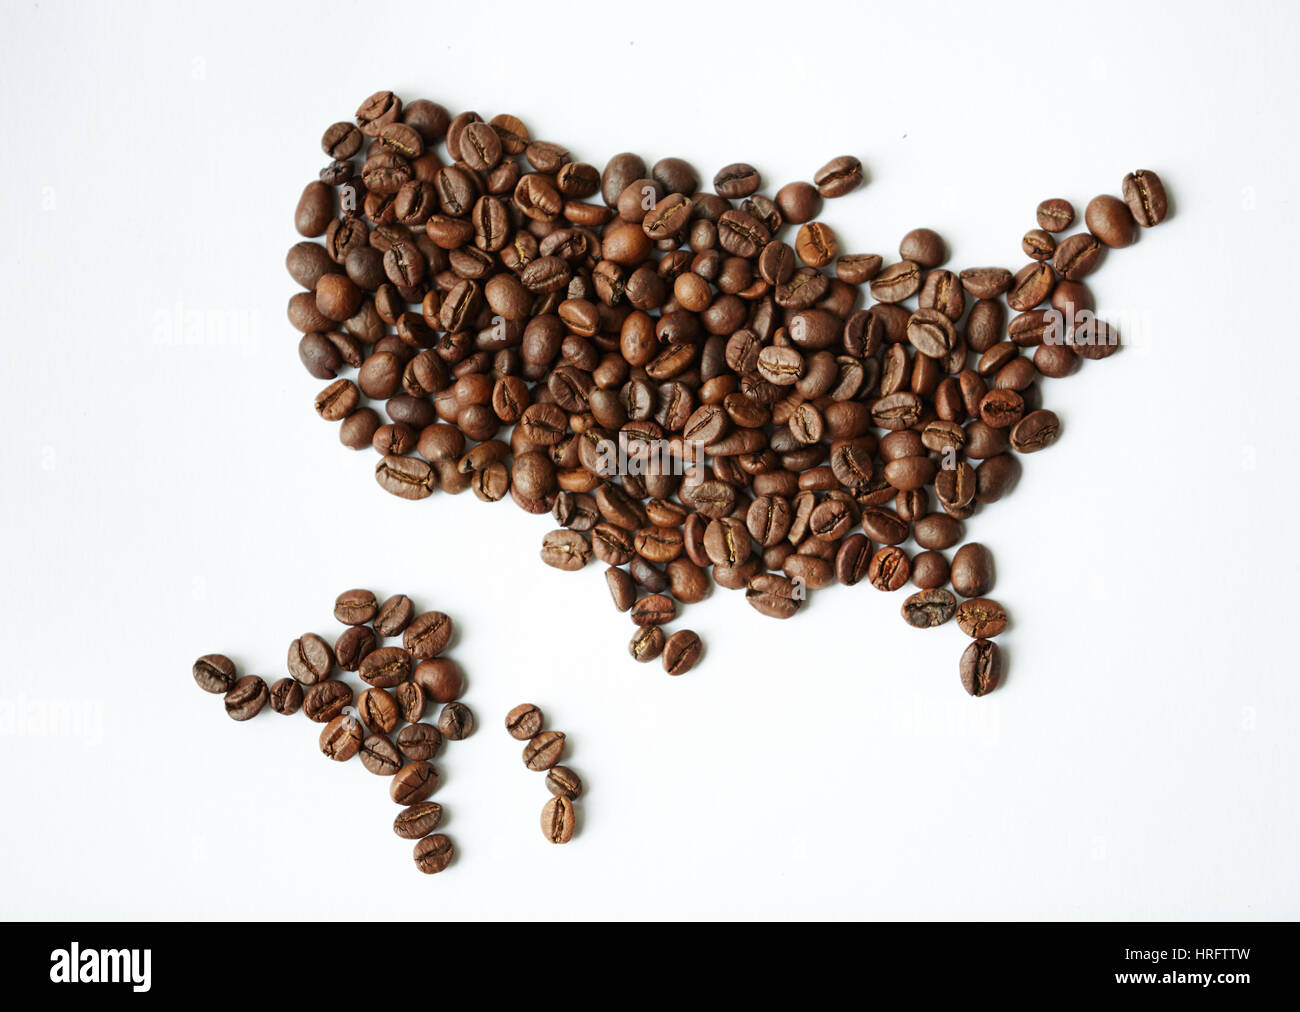 Closeup über Ansicht gedreht: Heap reichen braun frisch gerösteten Kaffee Samen auf weißen Tisch in Form der Weltkarte mit Kontinenten verstreut Stockfoto